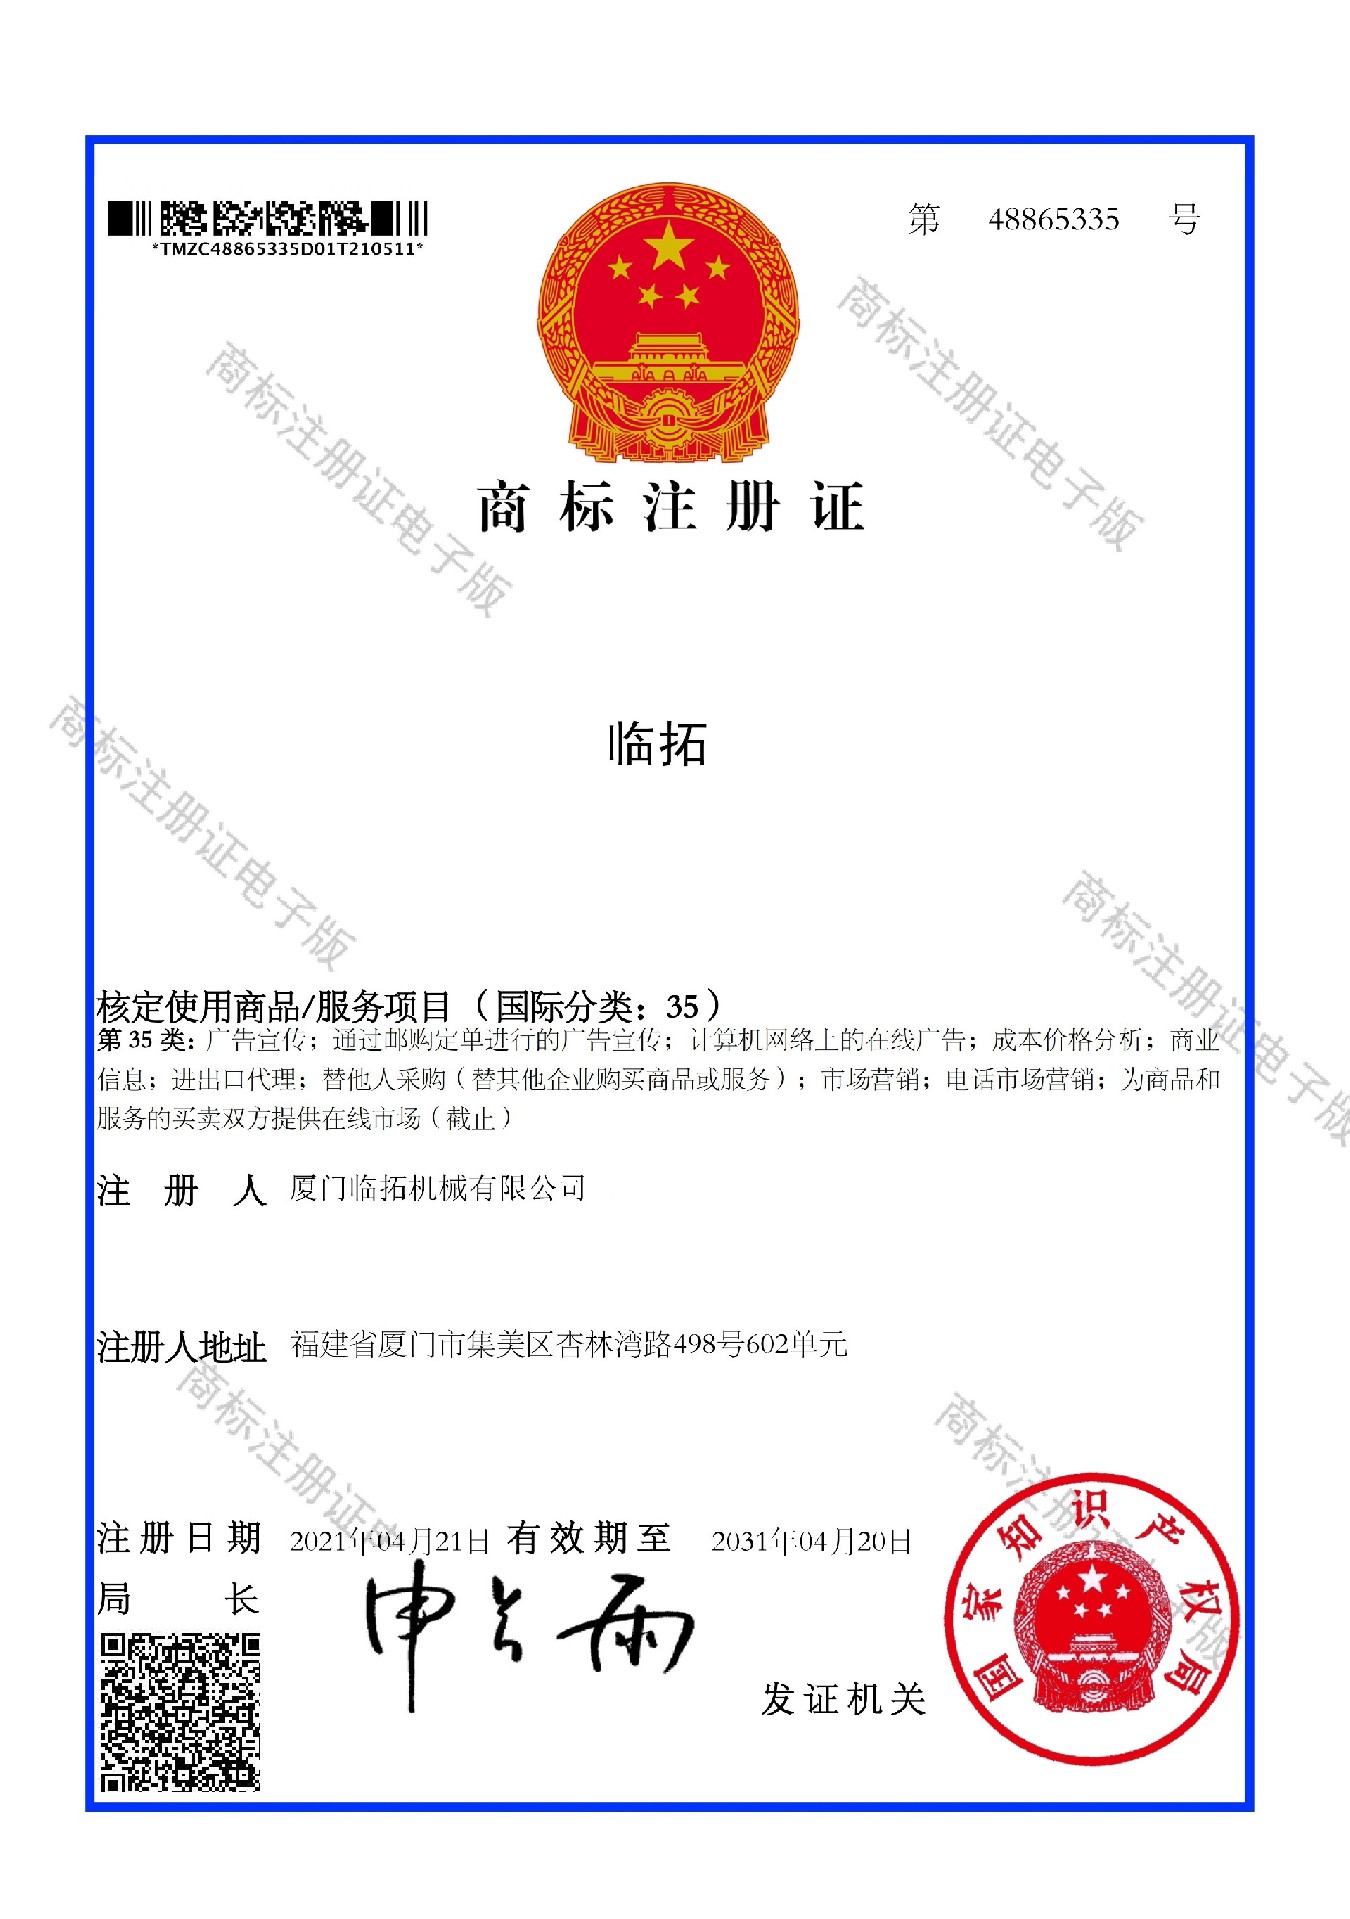 LTMG Trademark Certification 35